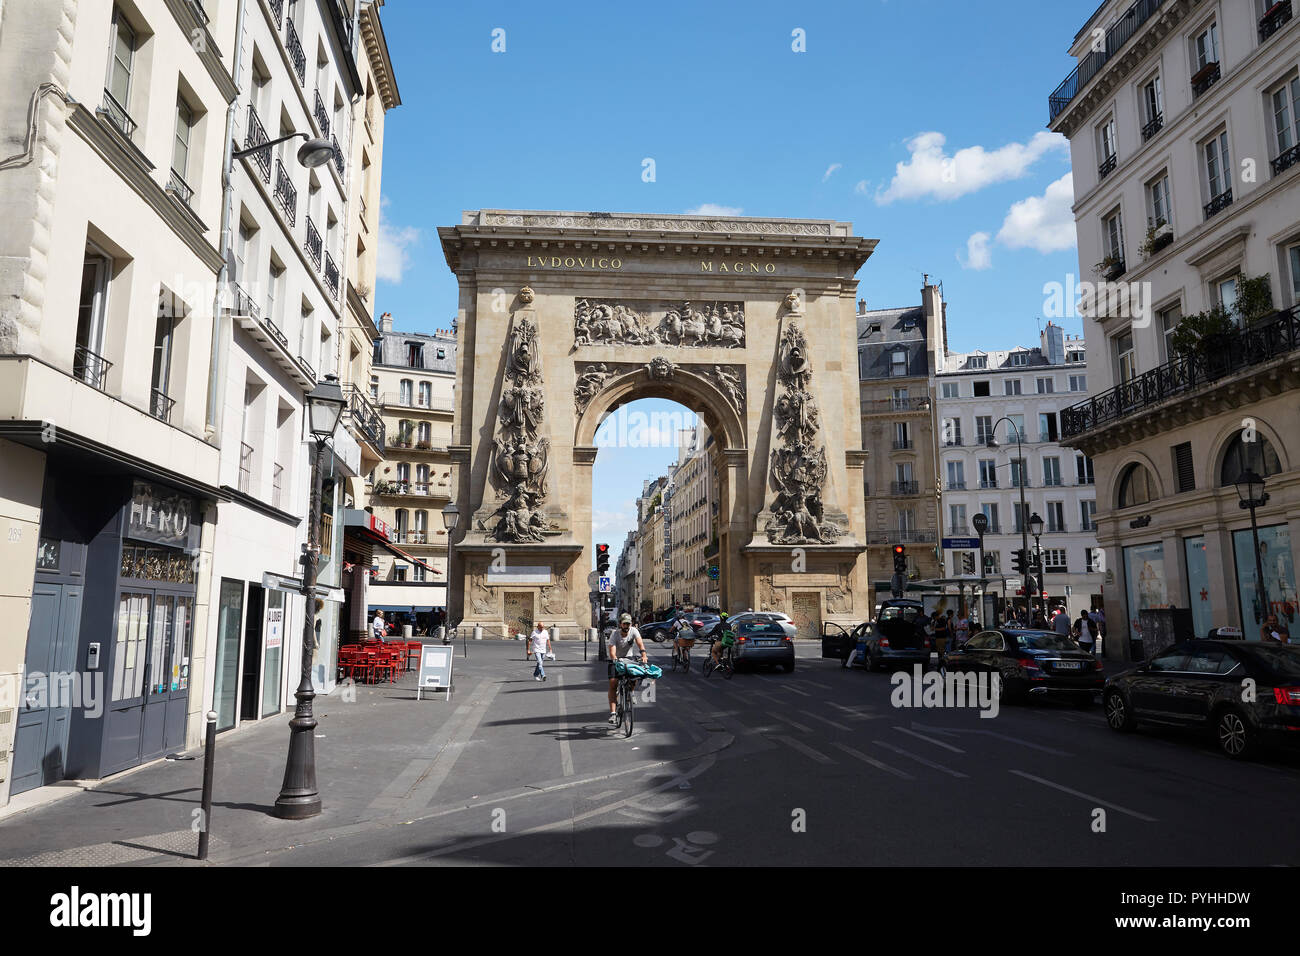 Paris, Ile-de-France, France - Vue depuis la Rue Saint-Denis dans le 10e arrondissement pour le monument Porte Saint-Denis, un monument situé sous la forme d'un arc de triomphe. Banque D'Images